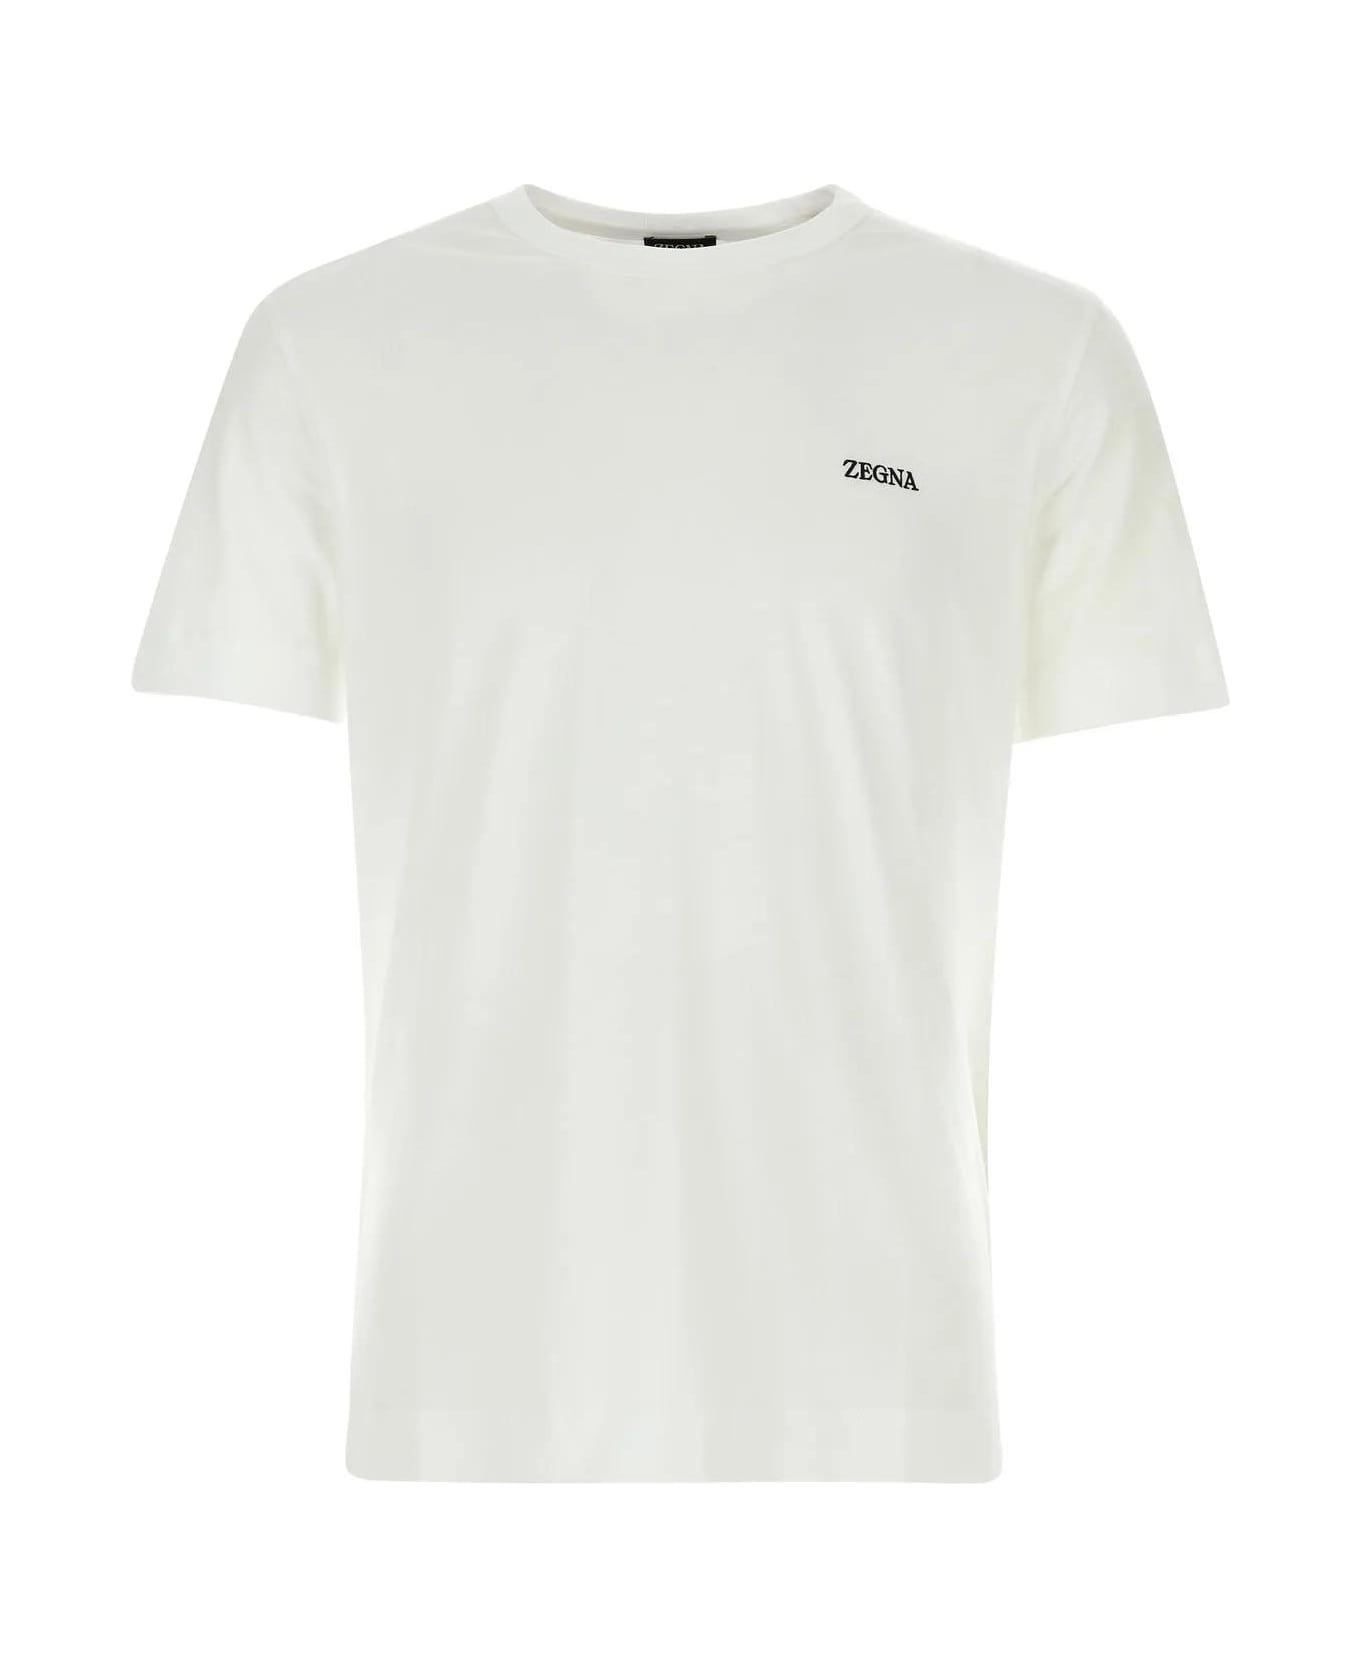 Zegna White Cotton T-shirt - White シャツ